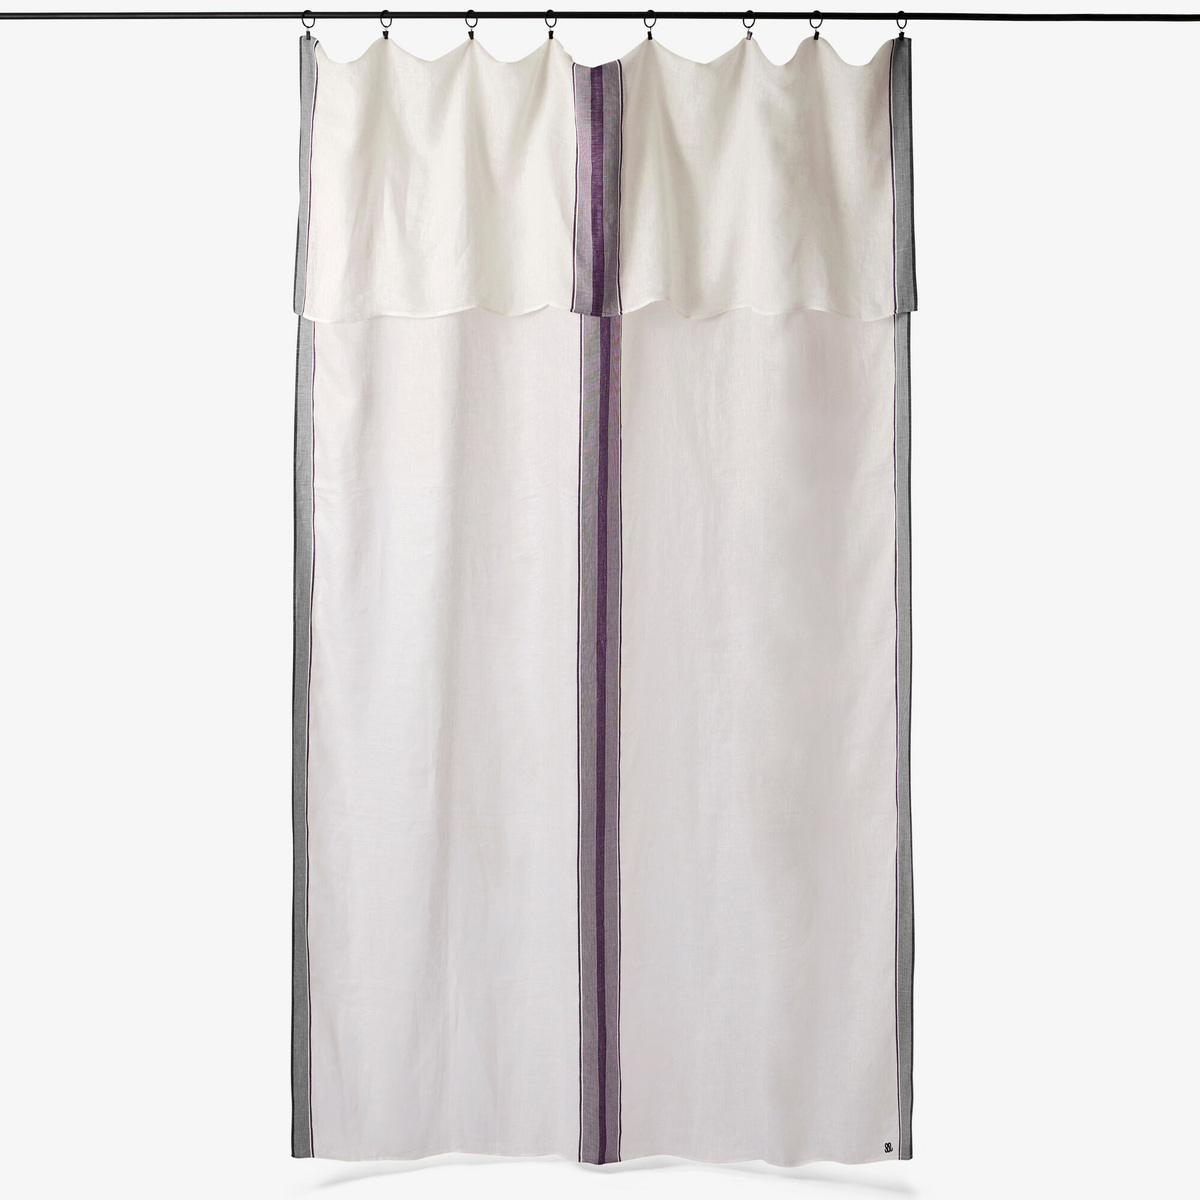 Dita curtain, White / Aubergine - 170 x 300 cm - image 1